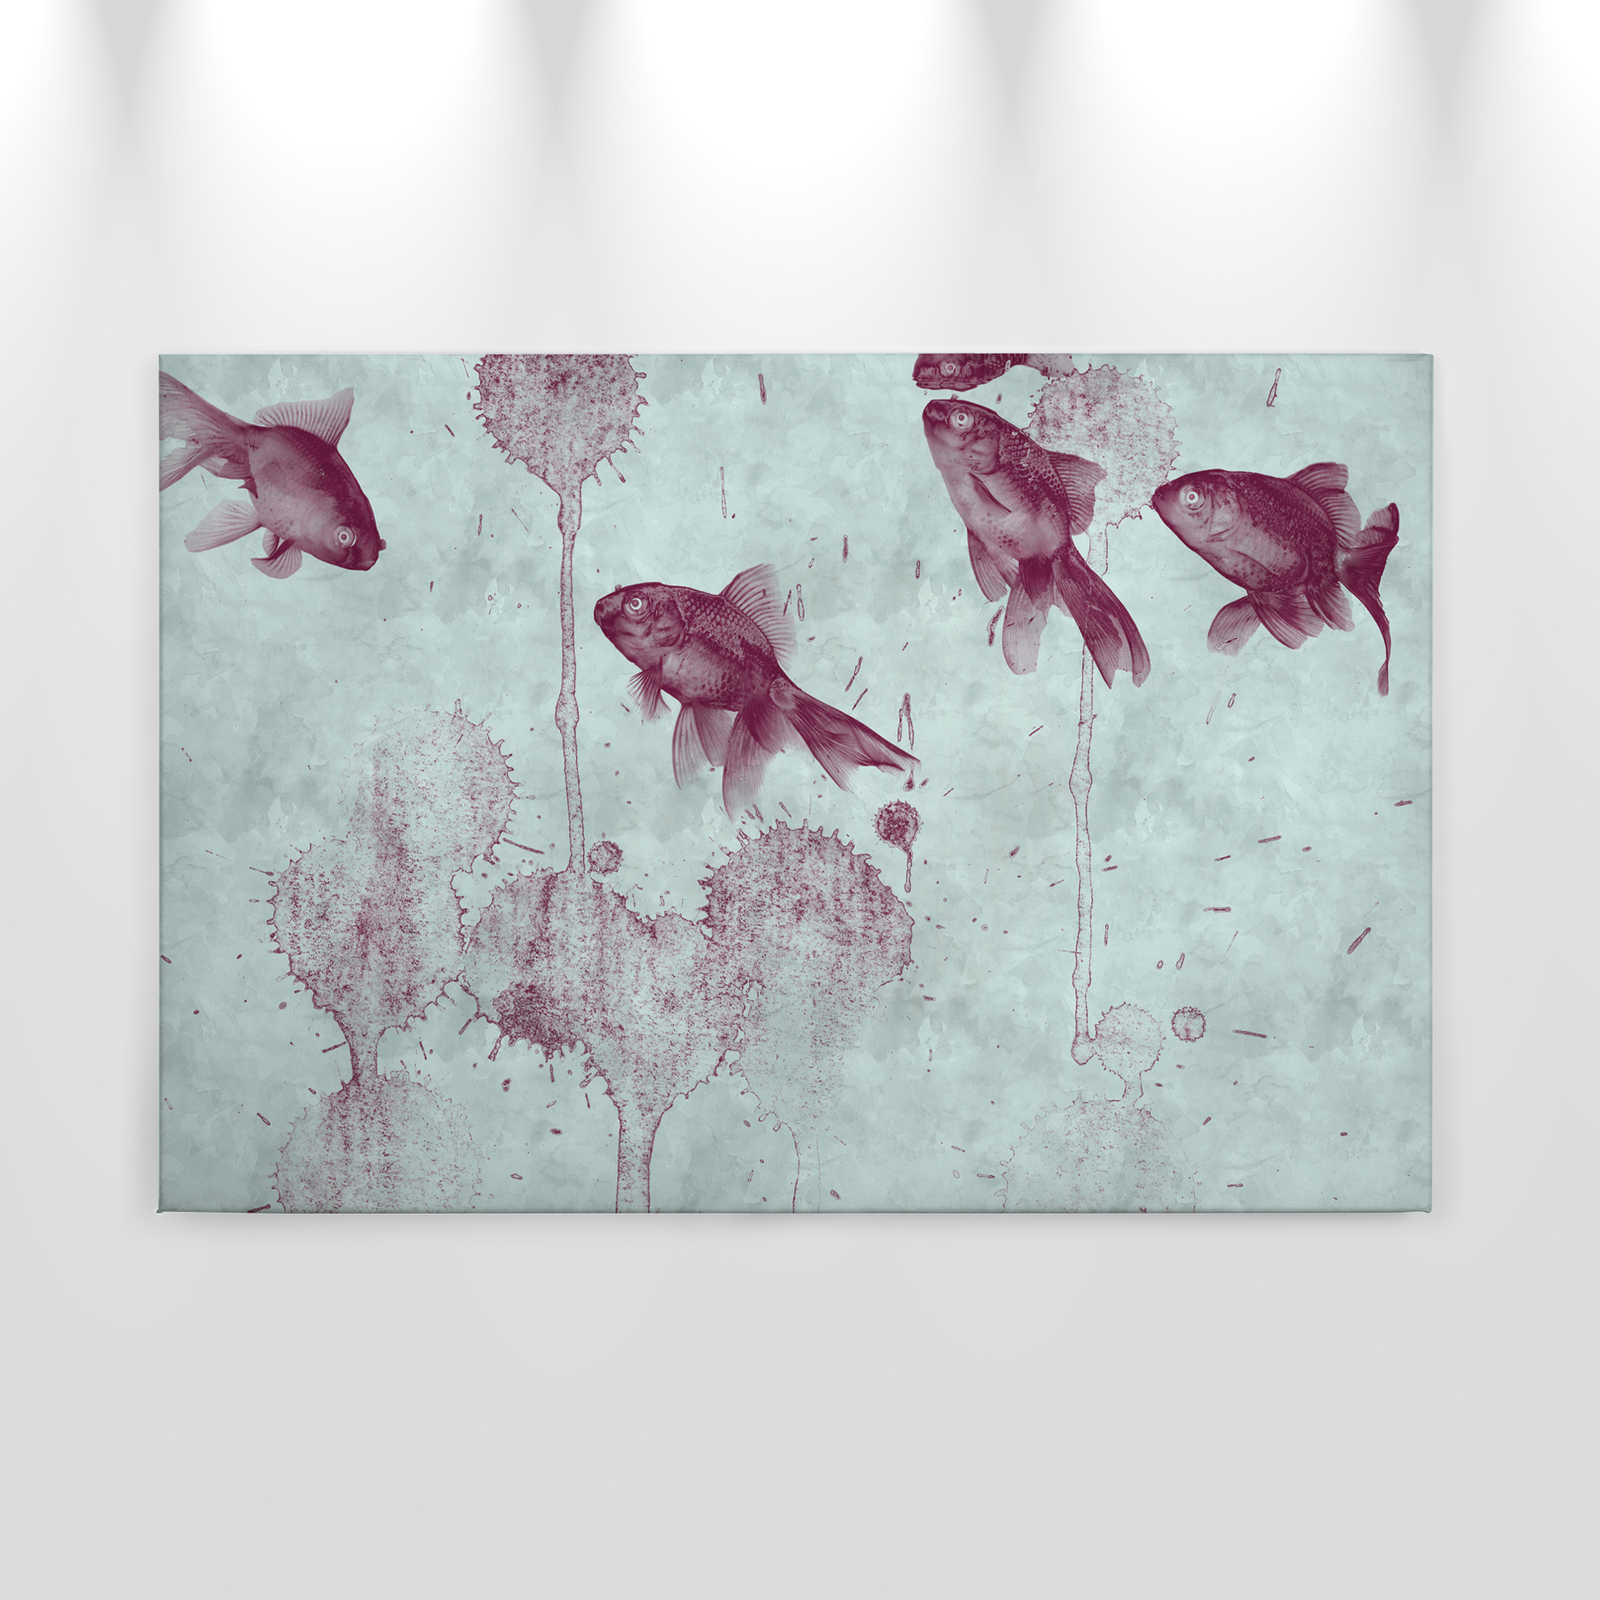             Quadro su tela di modernariato Disegno di pesce in stile acquerello - 0,90 m x 0,60 m
        